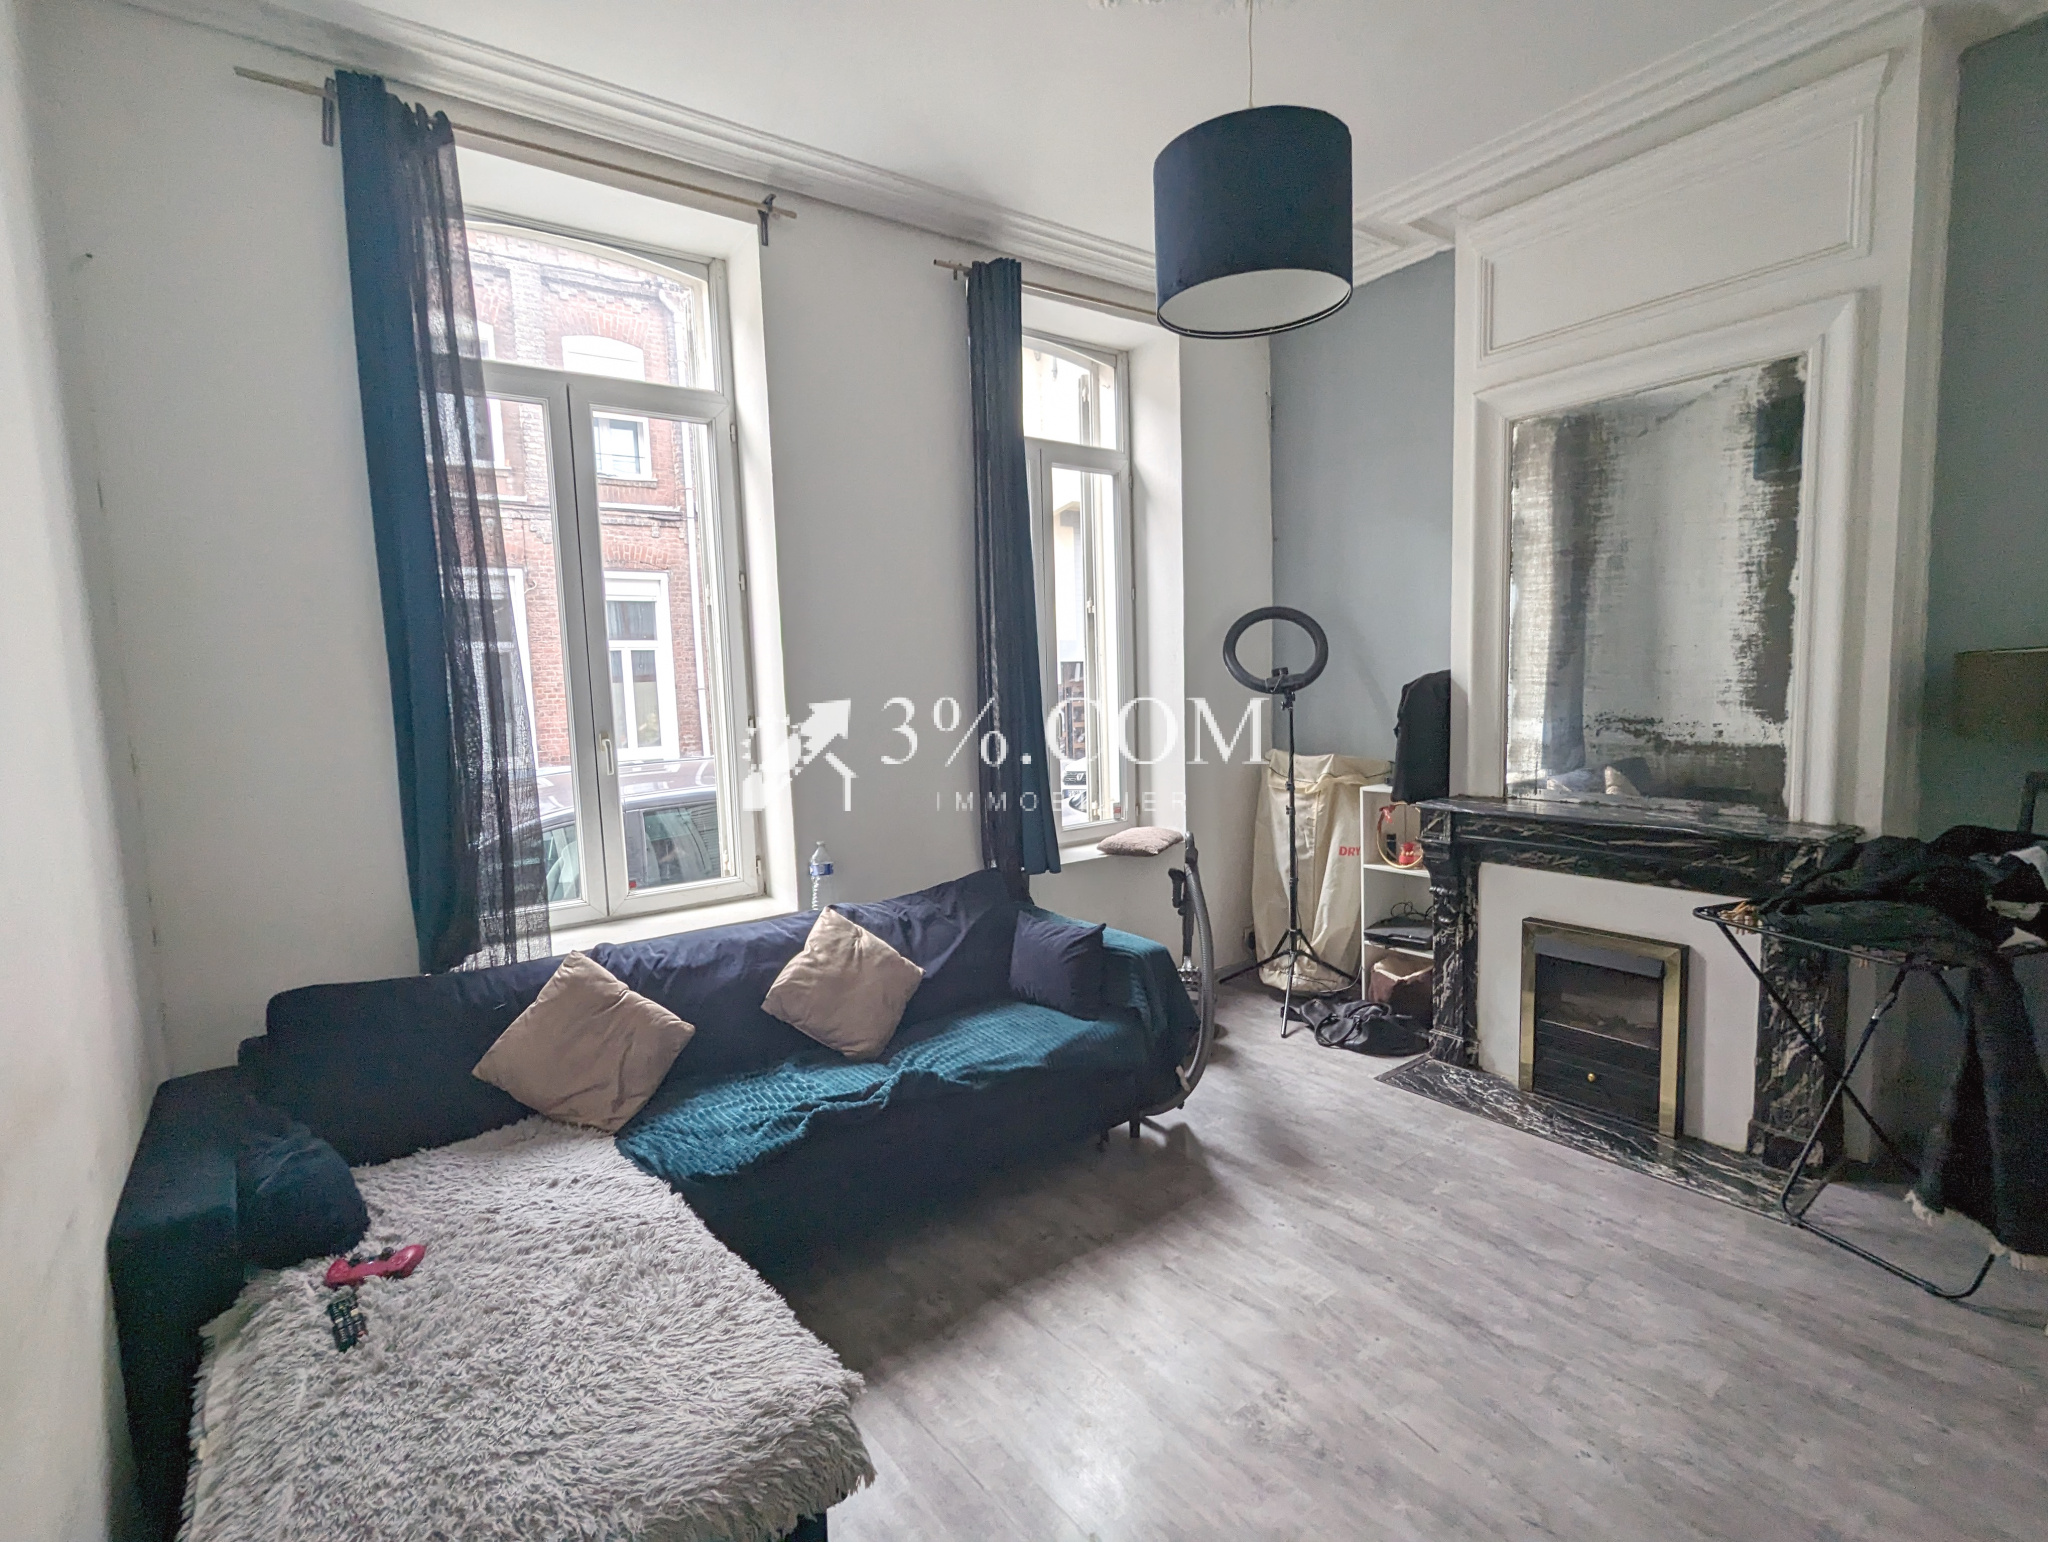 Vente Appartement 155m² 9 Pièces à Lille (59800) - 3%.Com